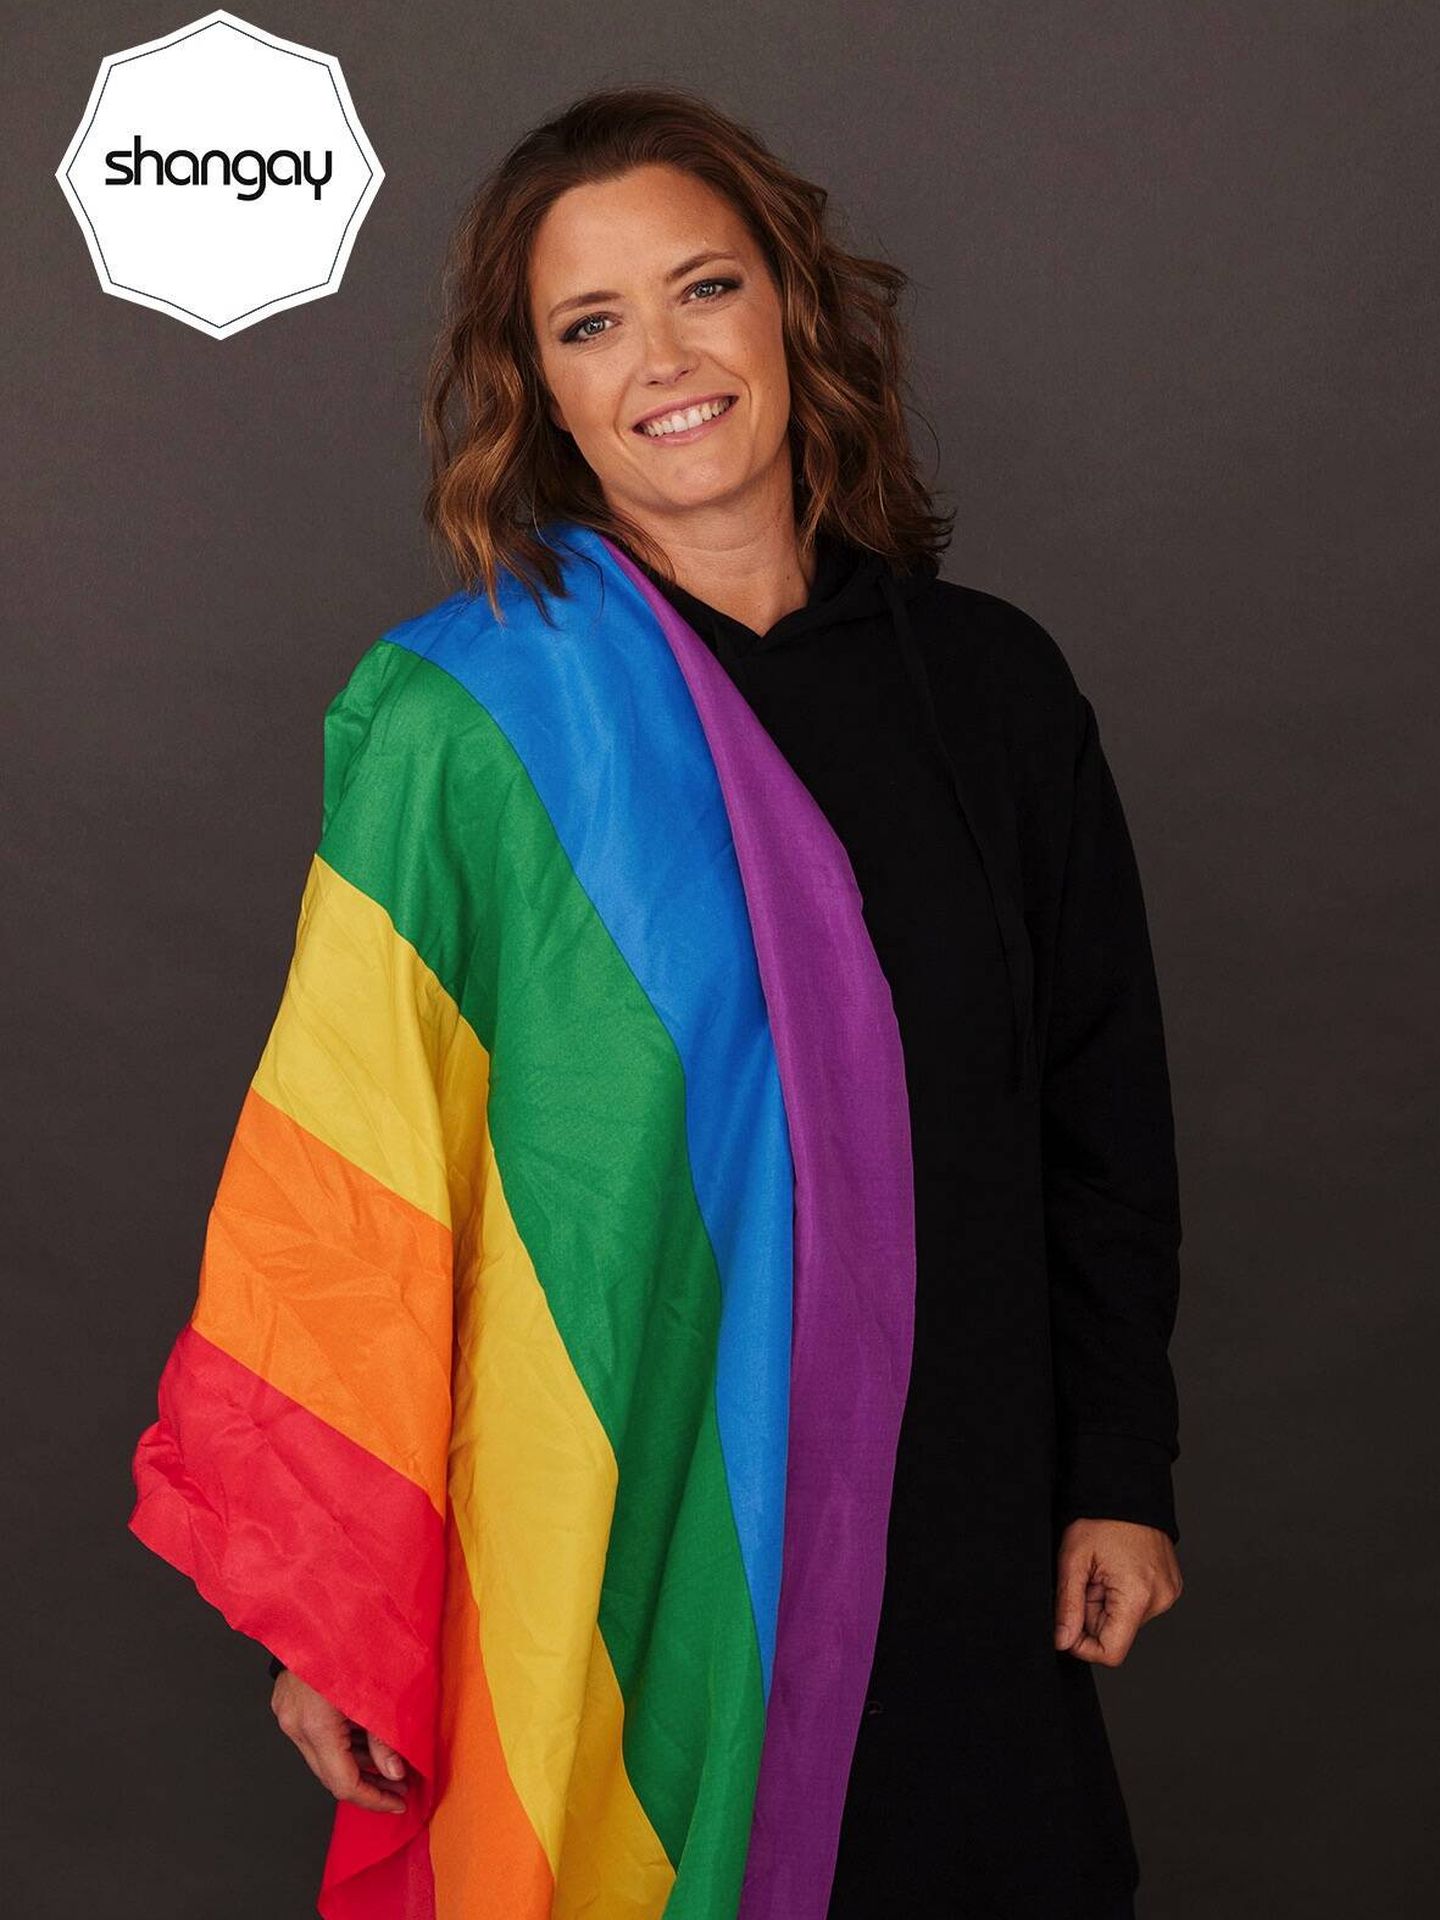 La presentadora posa con la bandera arcoíris. ('Shangay')